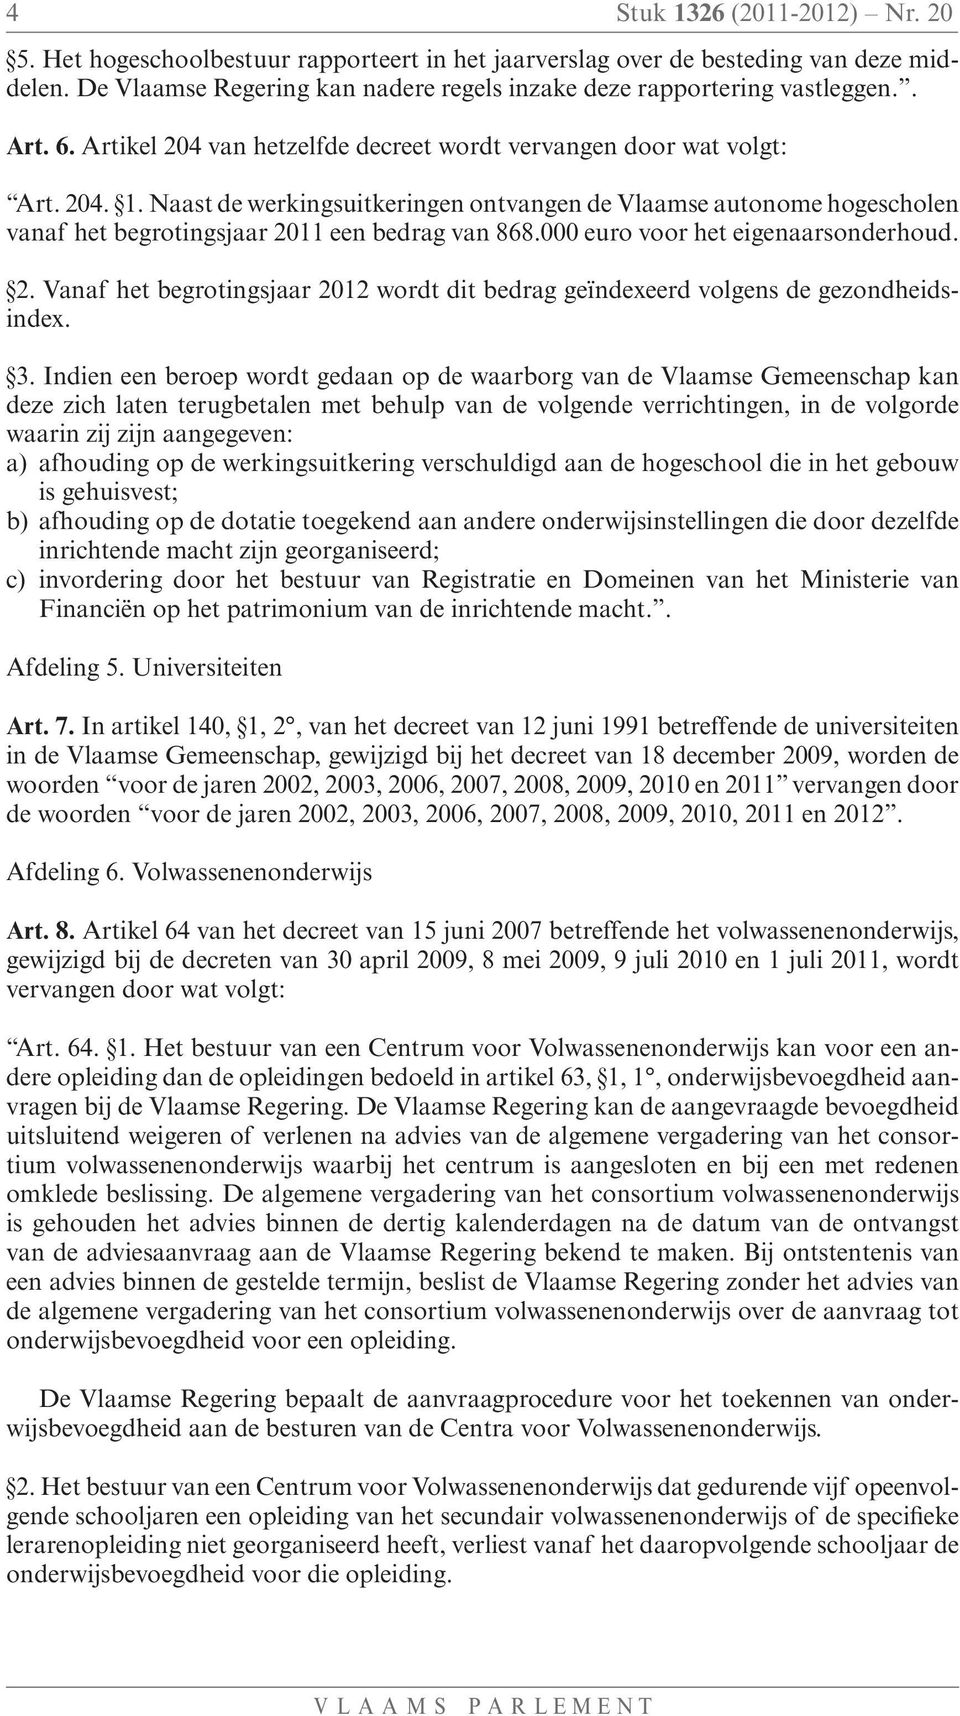 Naast de werkingsuitkeringen ontvangen de Vlaamse autonome hogescholen vanaf het begrotingsjaar 2011 een bedrag van 868.000 euro voor het eigenaarsonderhoud. 2. Vanaf het begrotingsjaar 2012 wordt dit bedrag geïndexeerd volgens de gezondheidsindex.